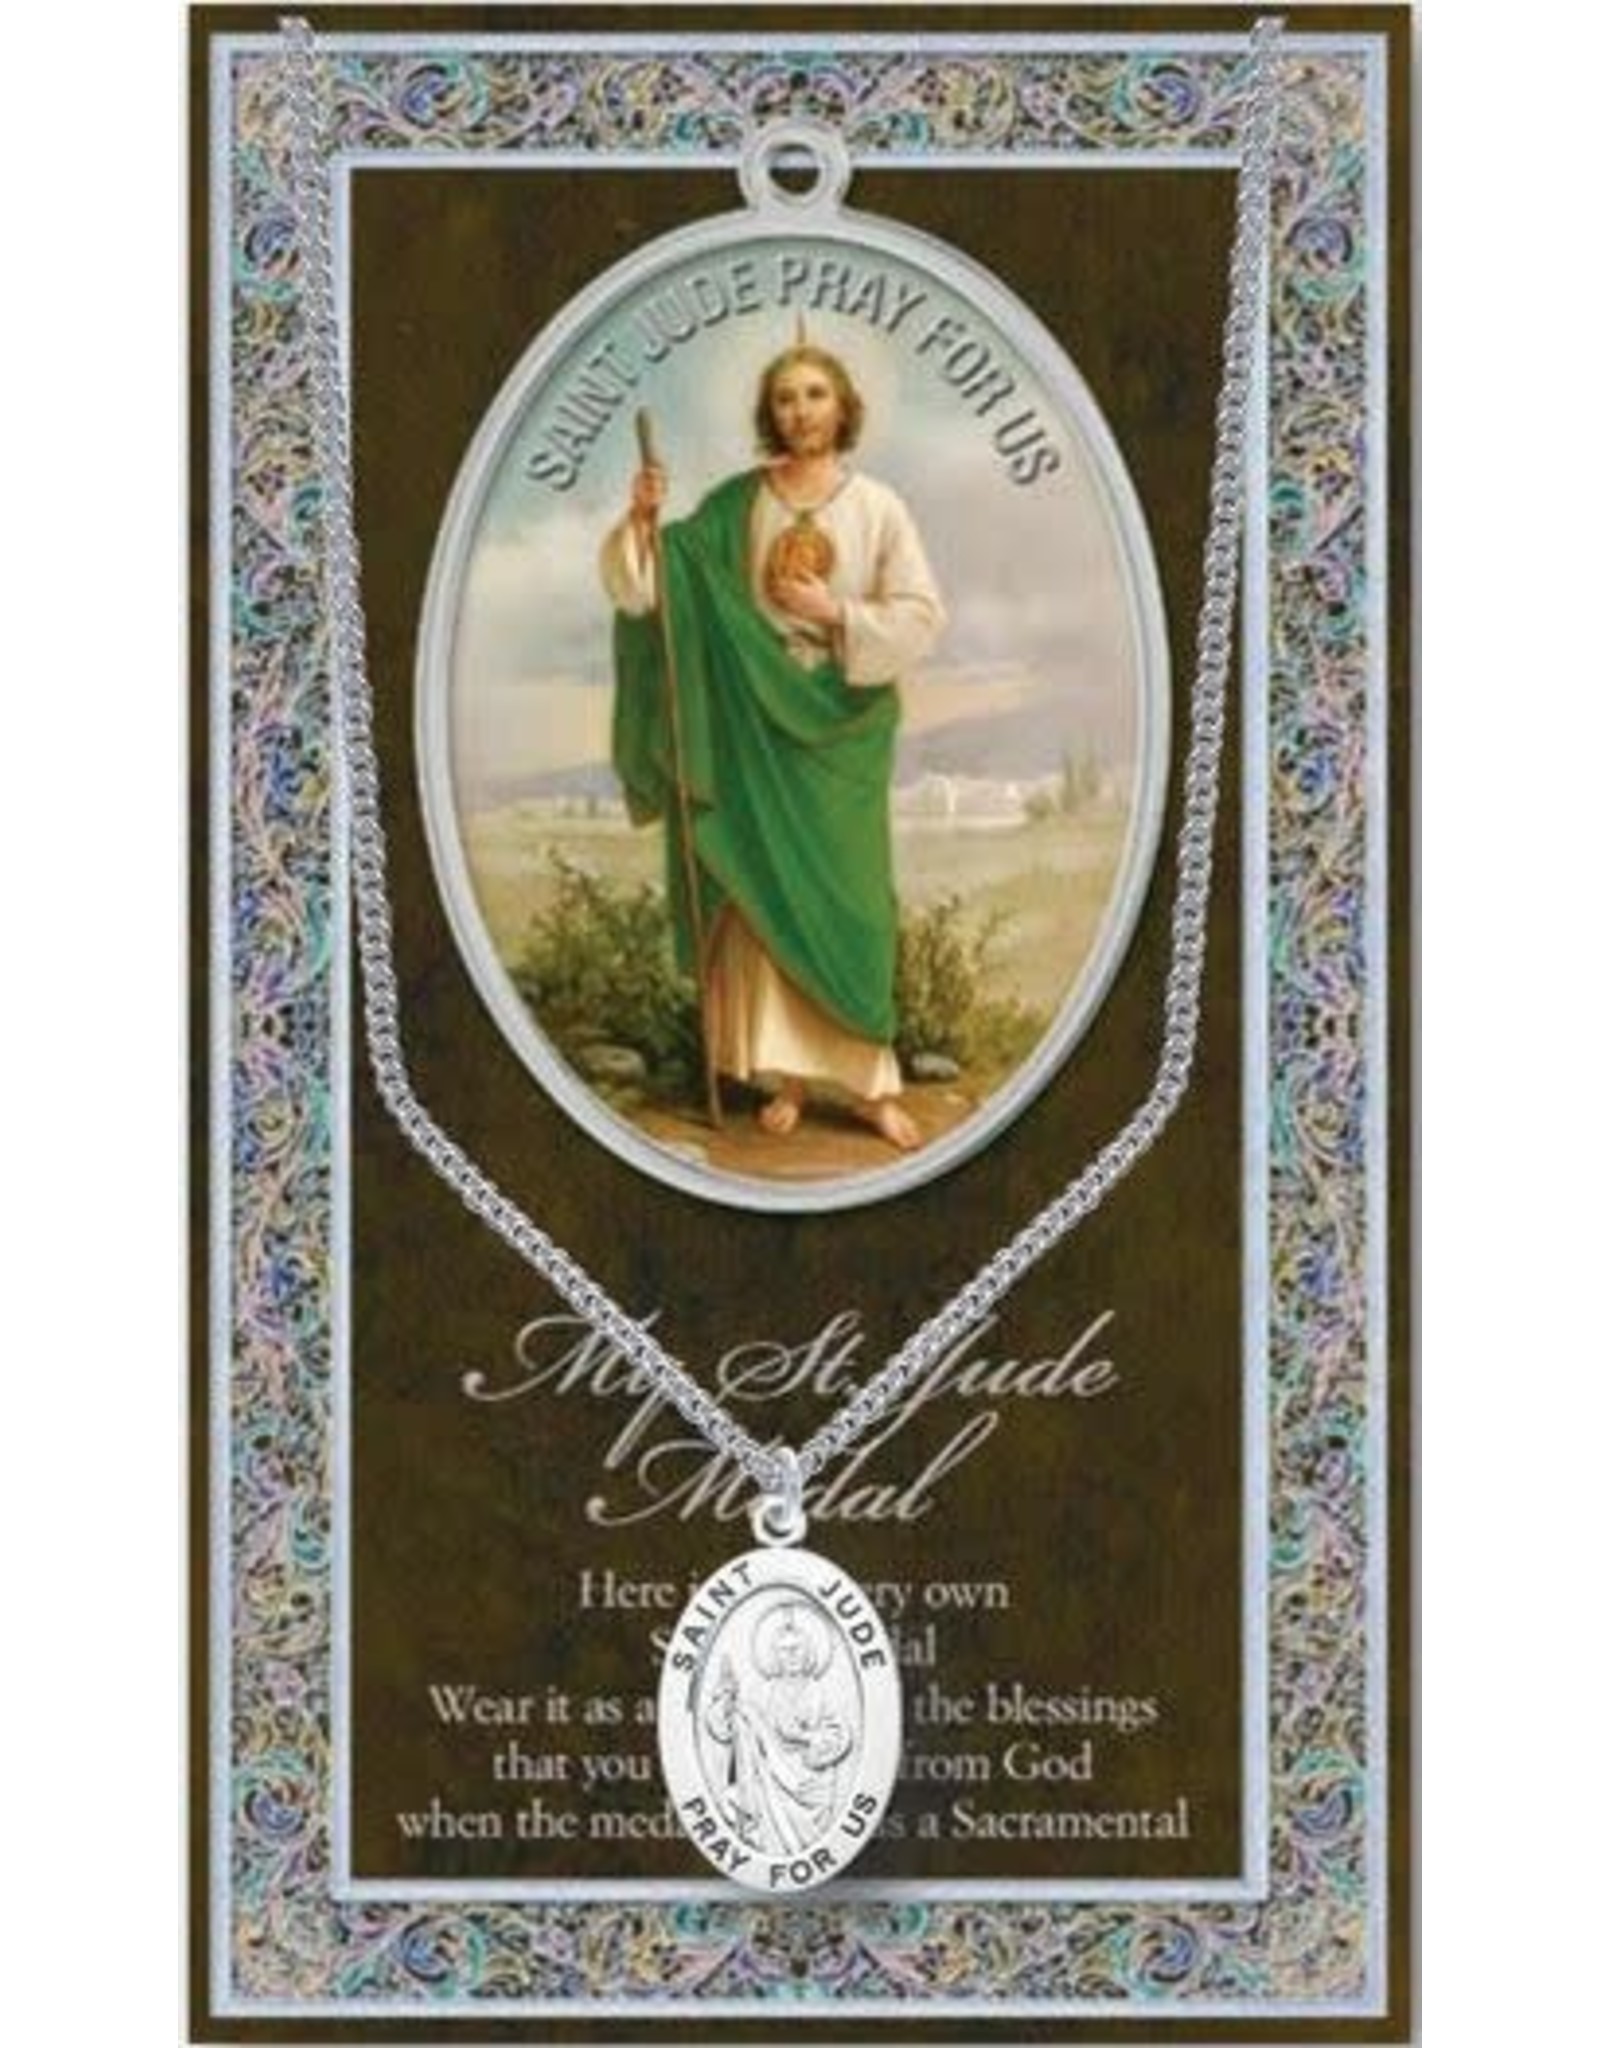 Hirten Saint Medal with Prayer Card - St. Jude